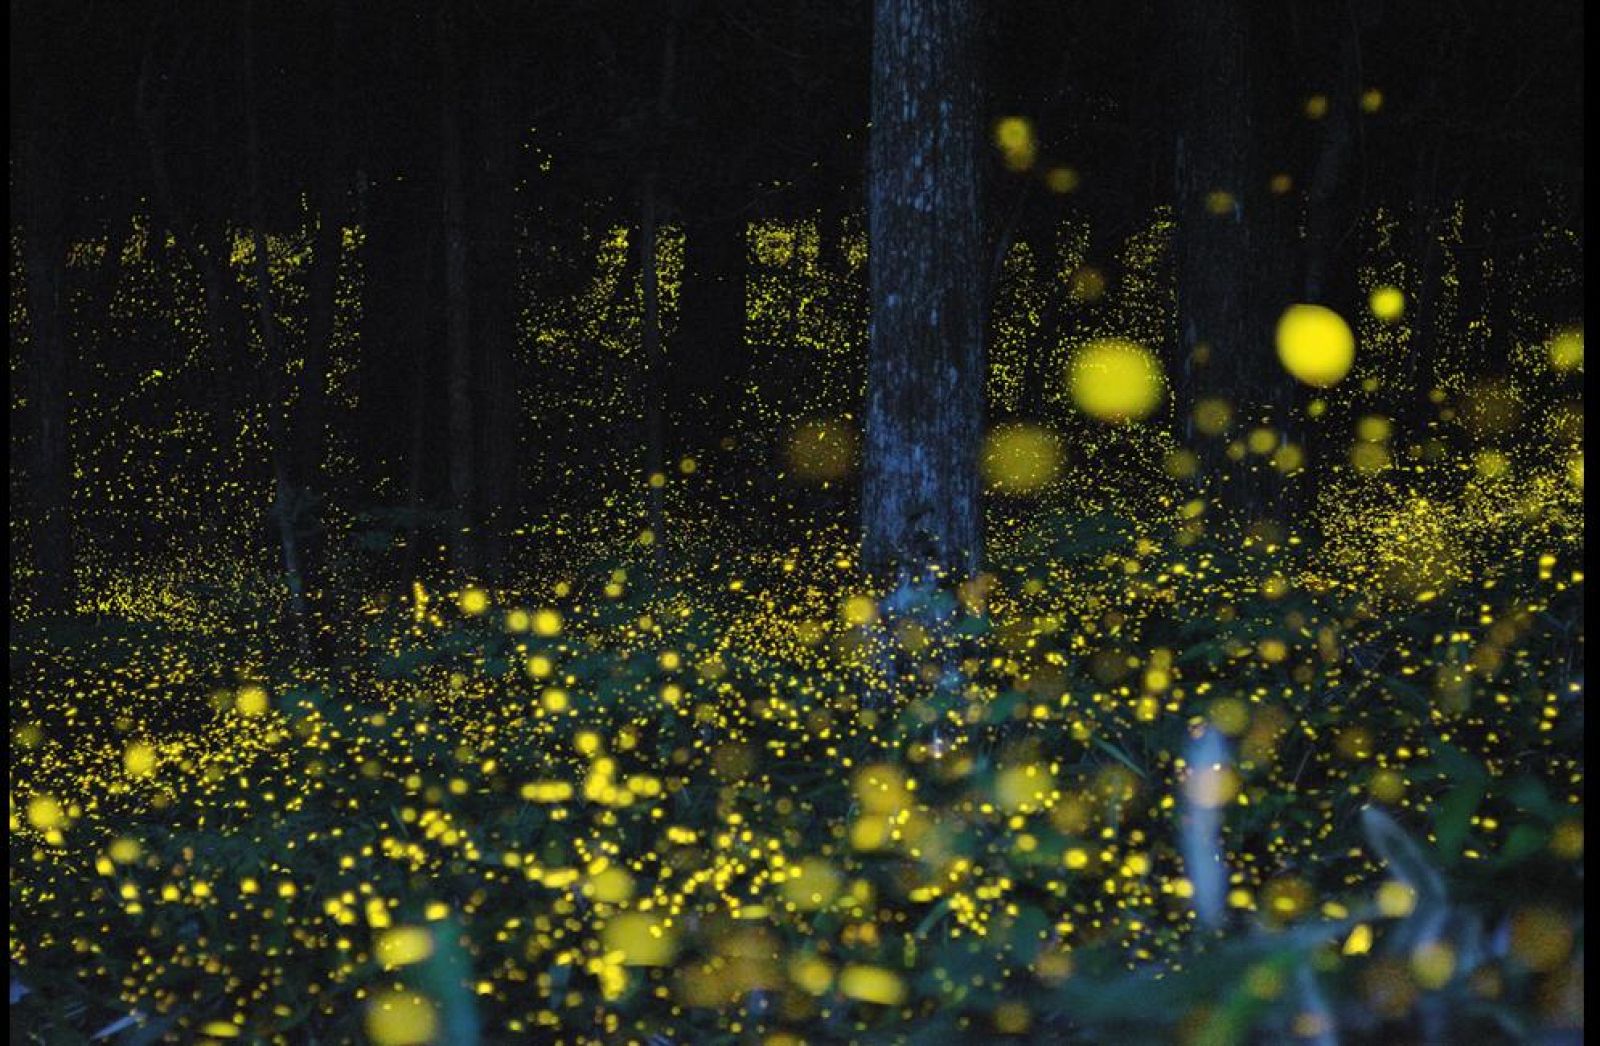 Imagen nocturna de luciérnagas. Su luminosidad se denomina luciferina.